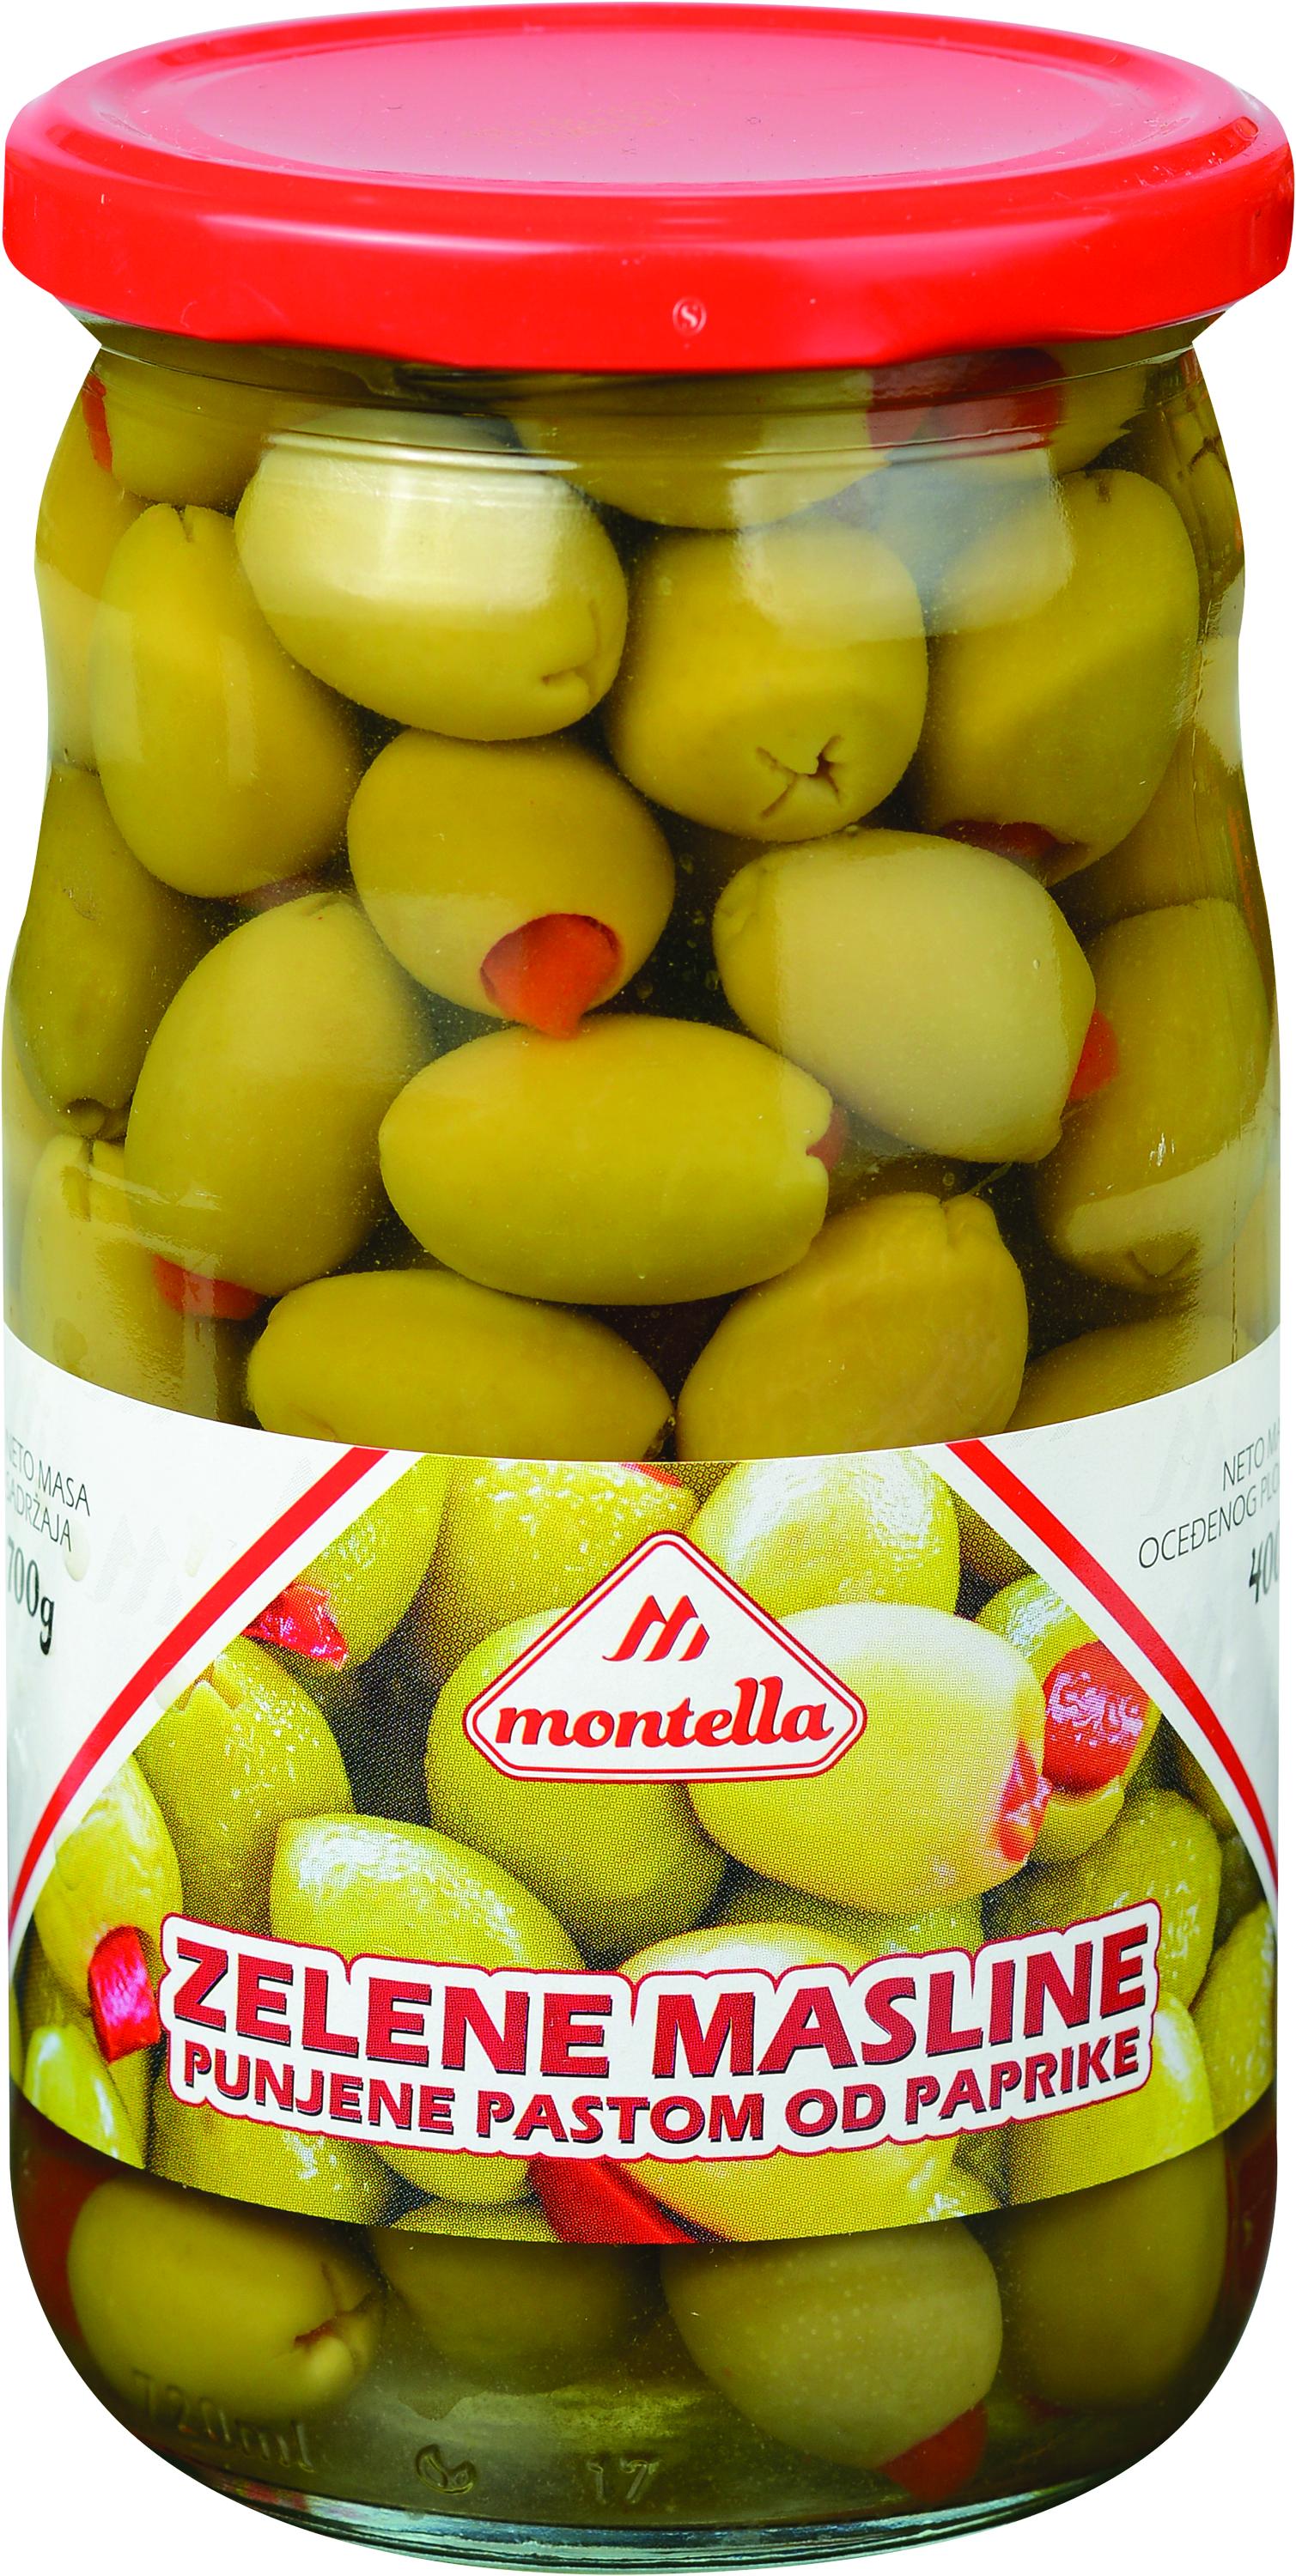 Slika za Masline zelene punjene pastom od paprike Montella 700g